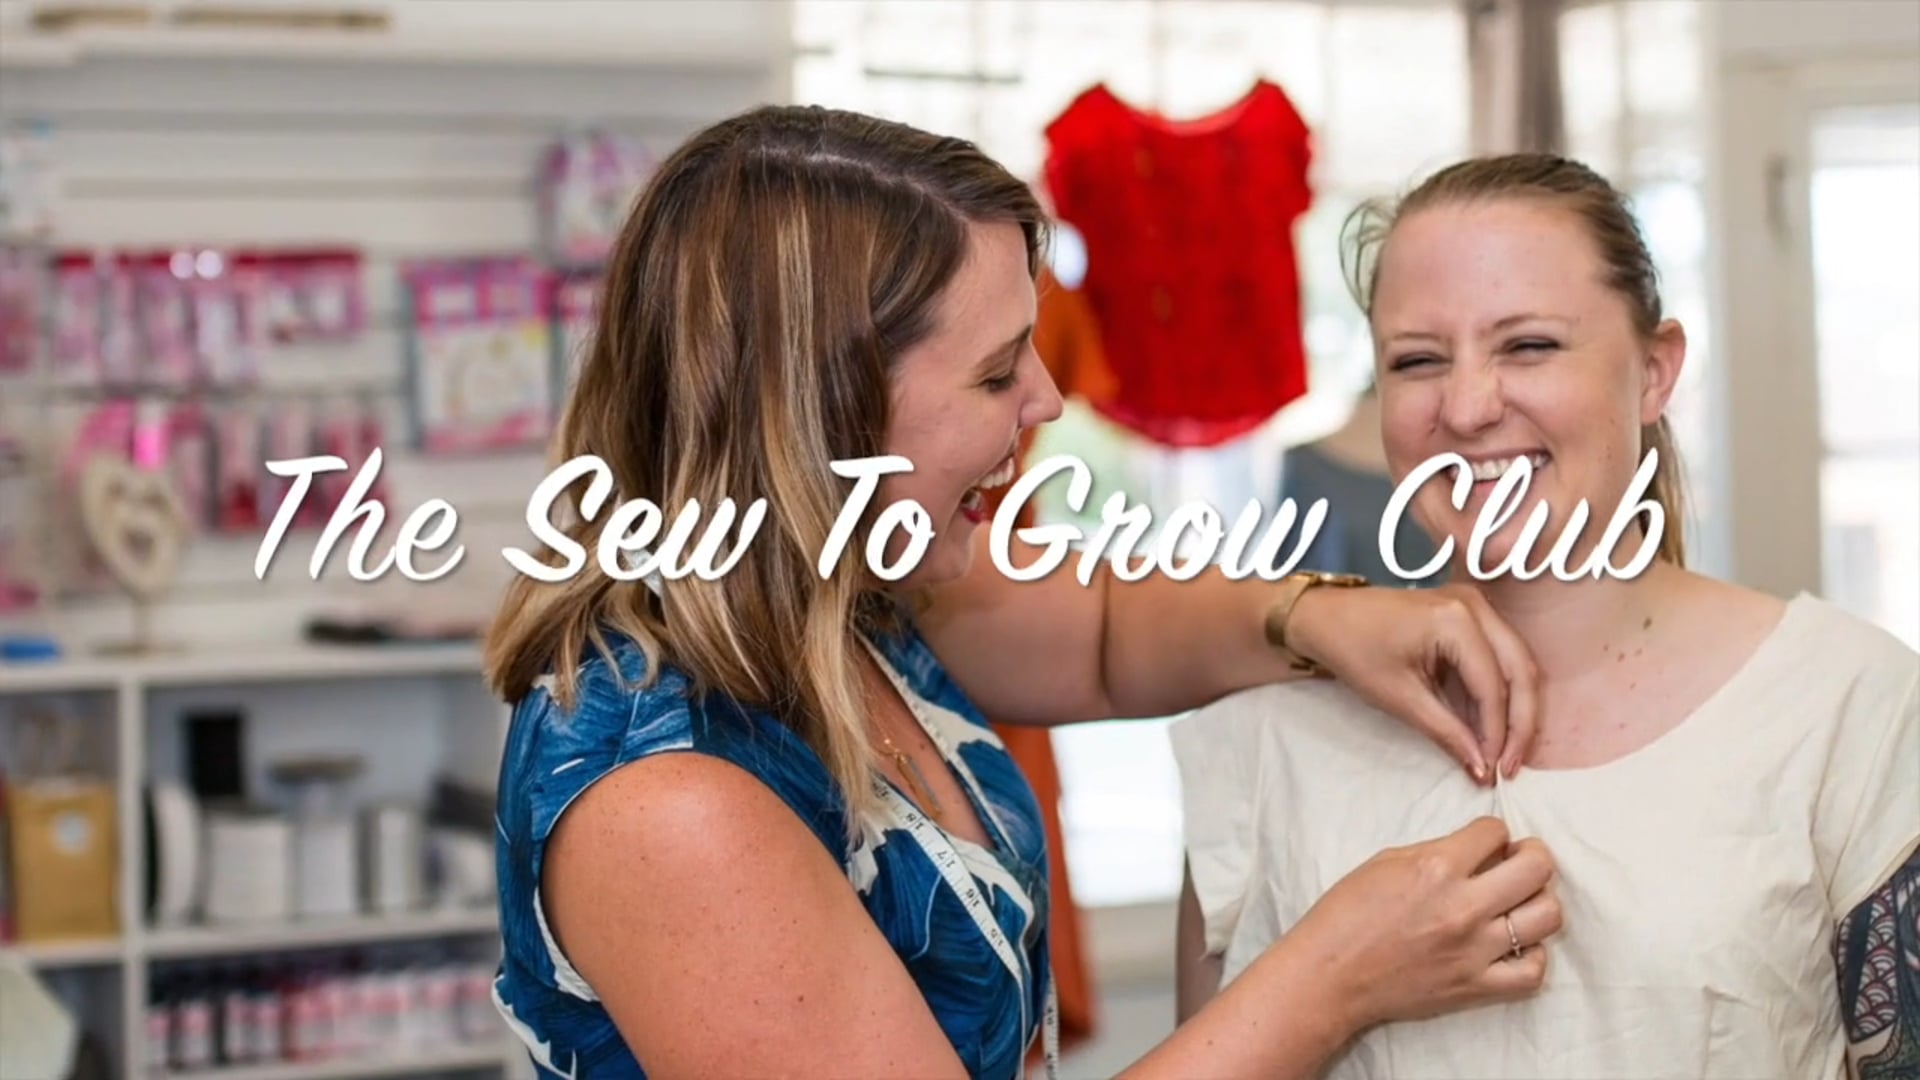 Sew To Grow Club